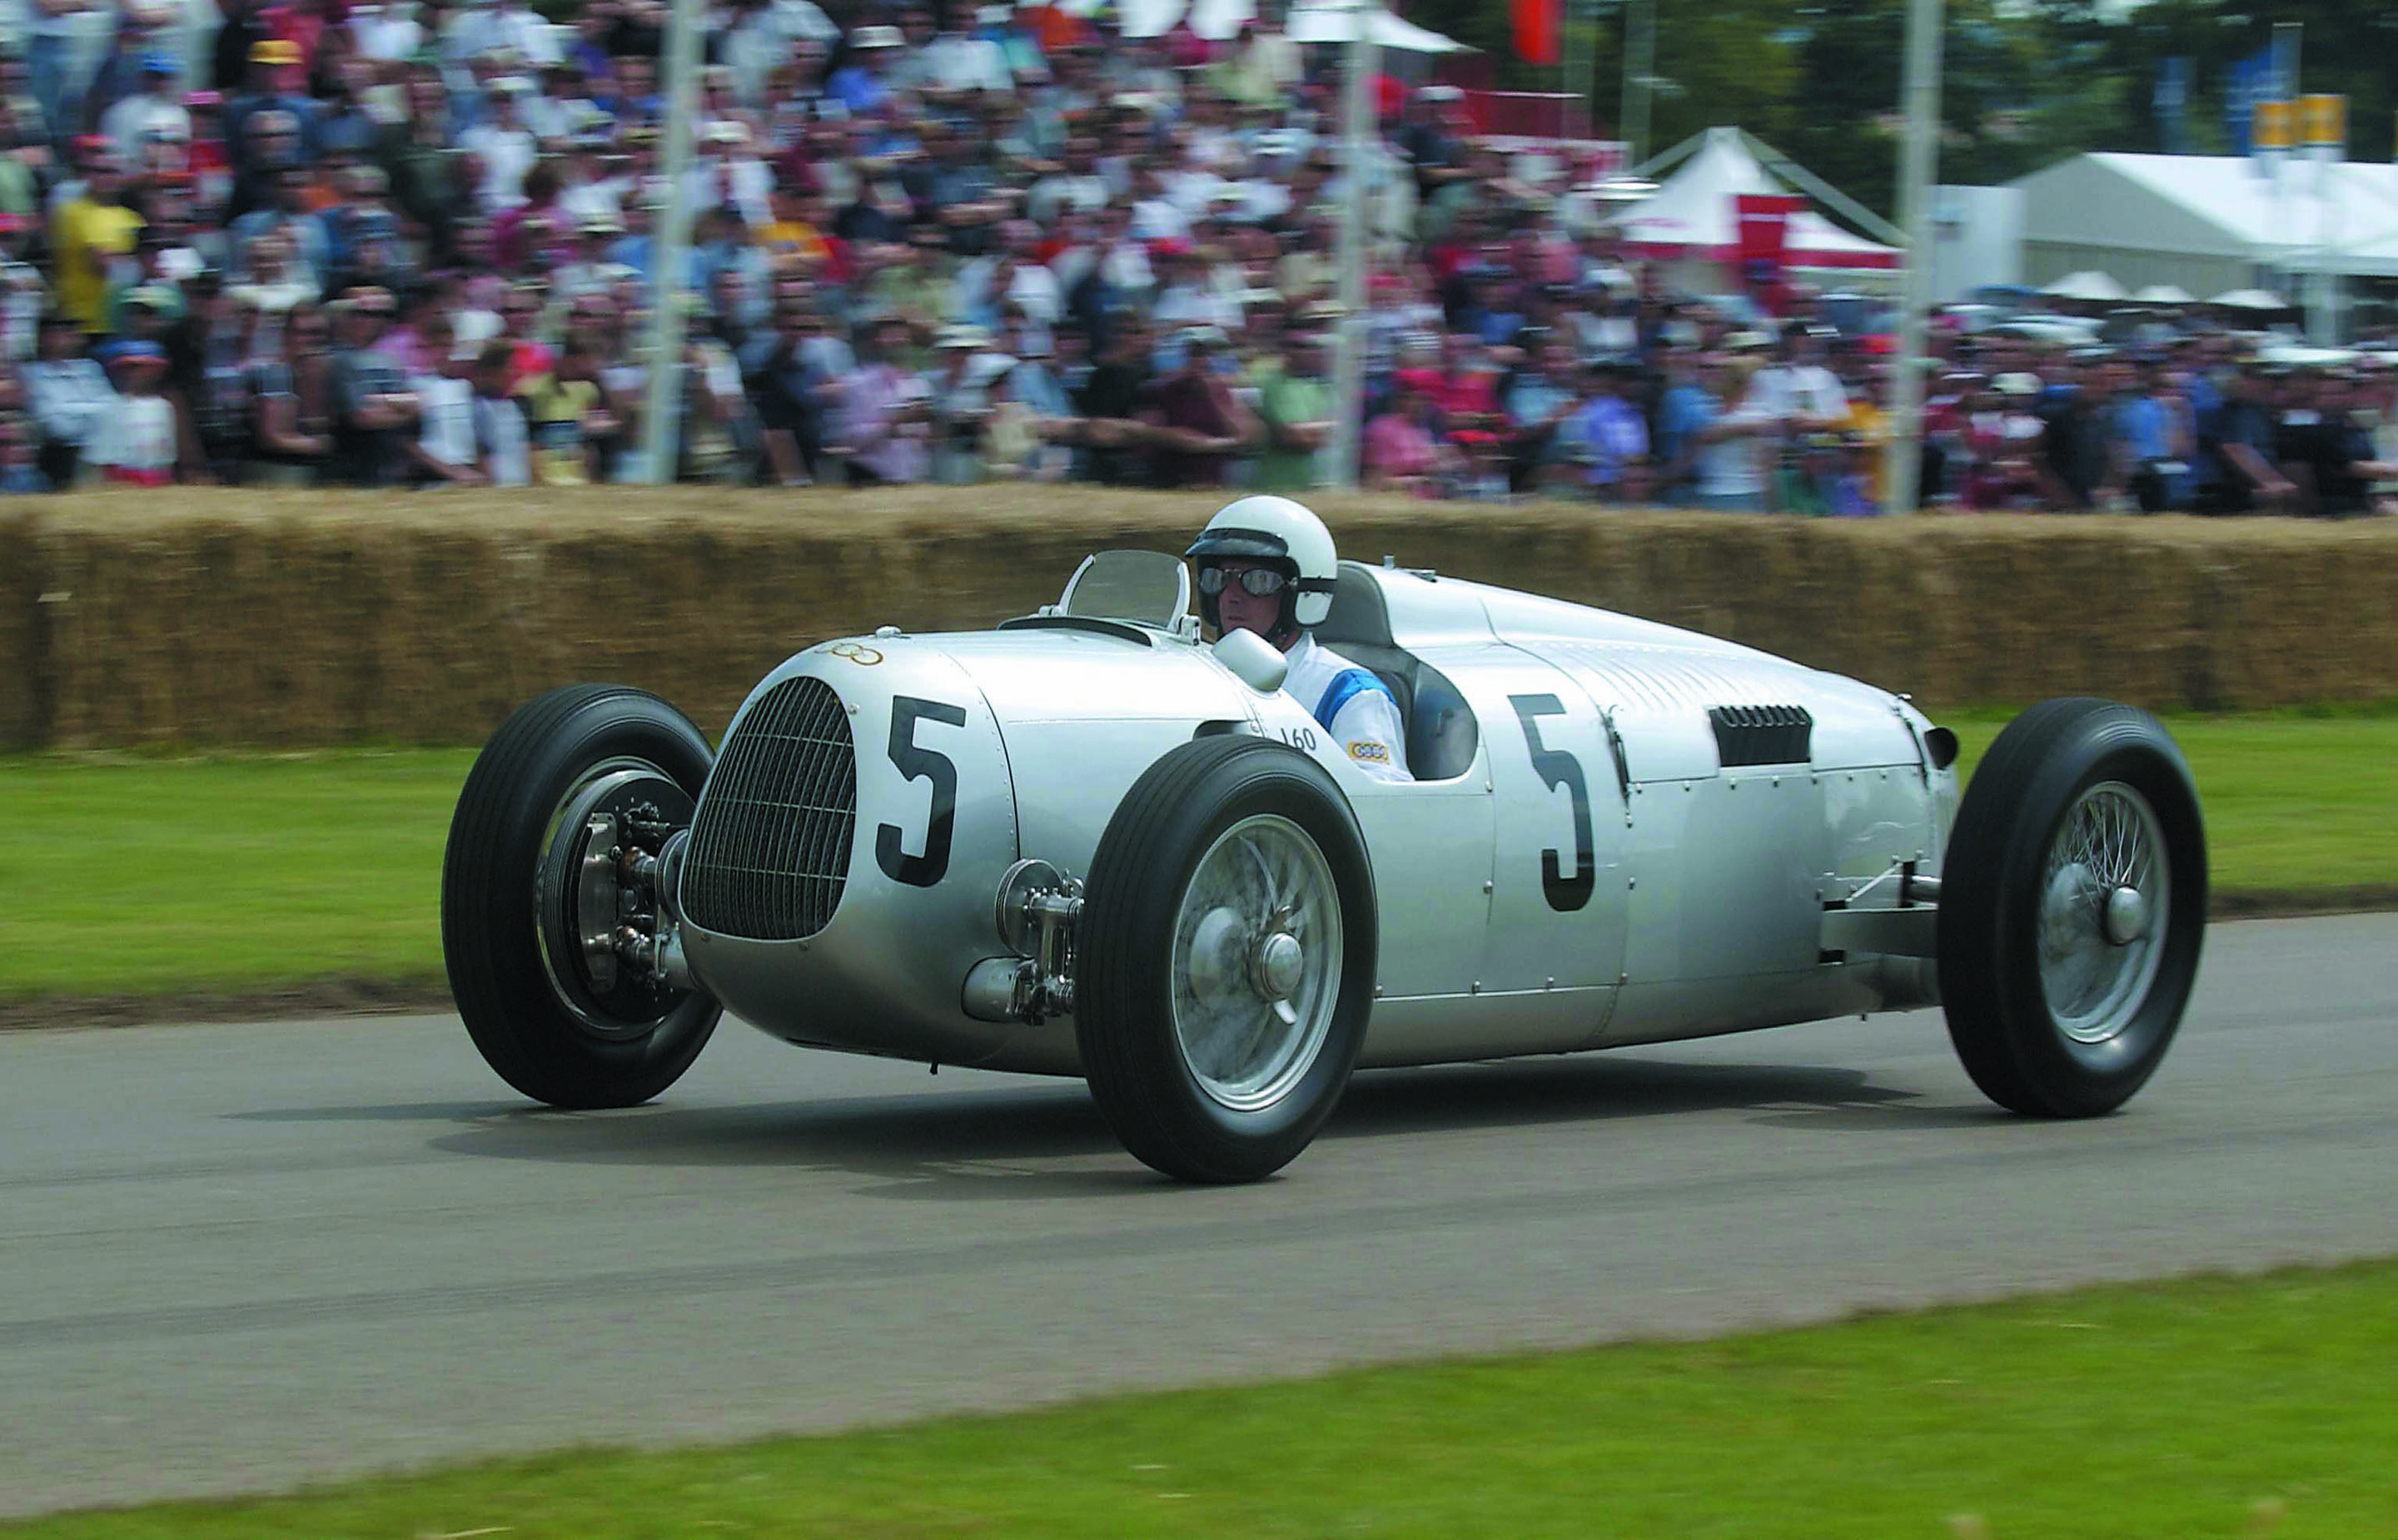 Auto Union Rennwagen Typ C 16-Zylinder (1936) beim "Festival of Speed" in Goodwood (12. - 14. Juli 2002)